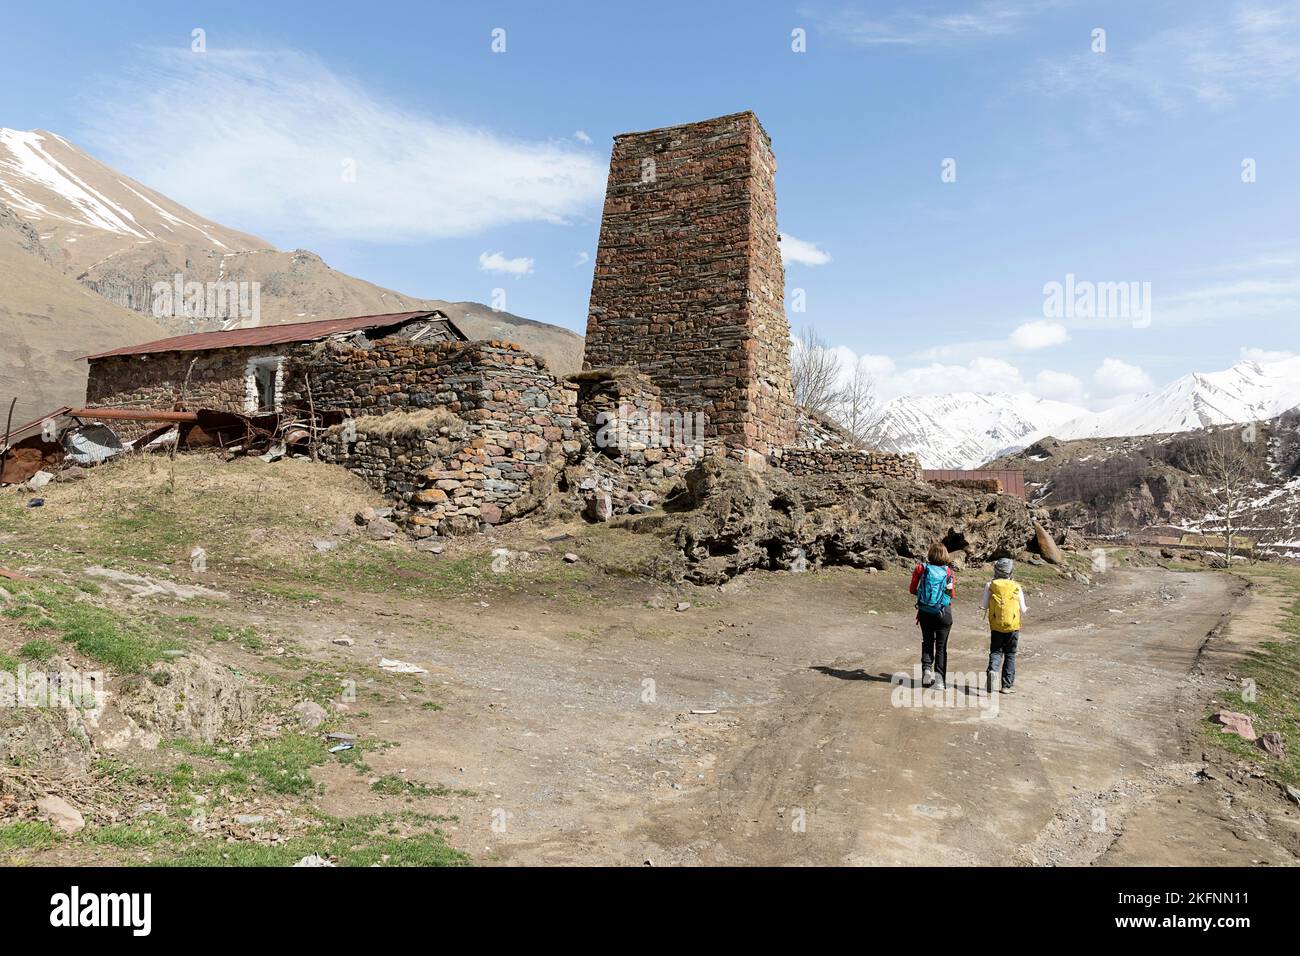 Randonneurs marchant vers la vallée de la ferme, traversant des villages en pierre abandonnés près de la frontière russe, caucase, kazbegi, géorgie Banque D'Images